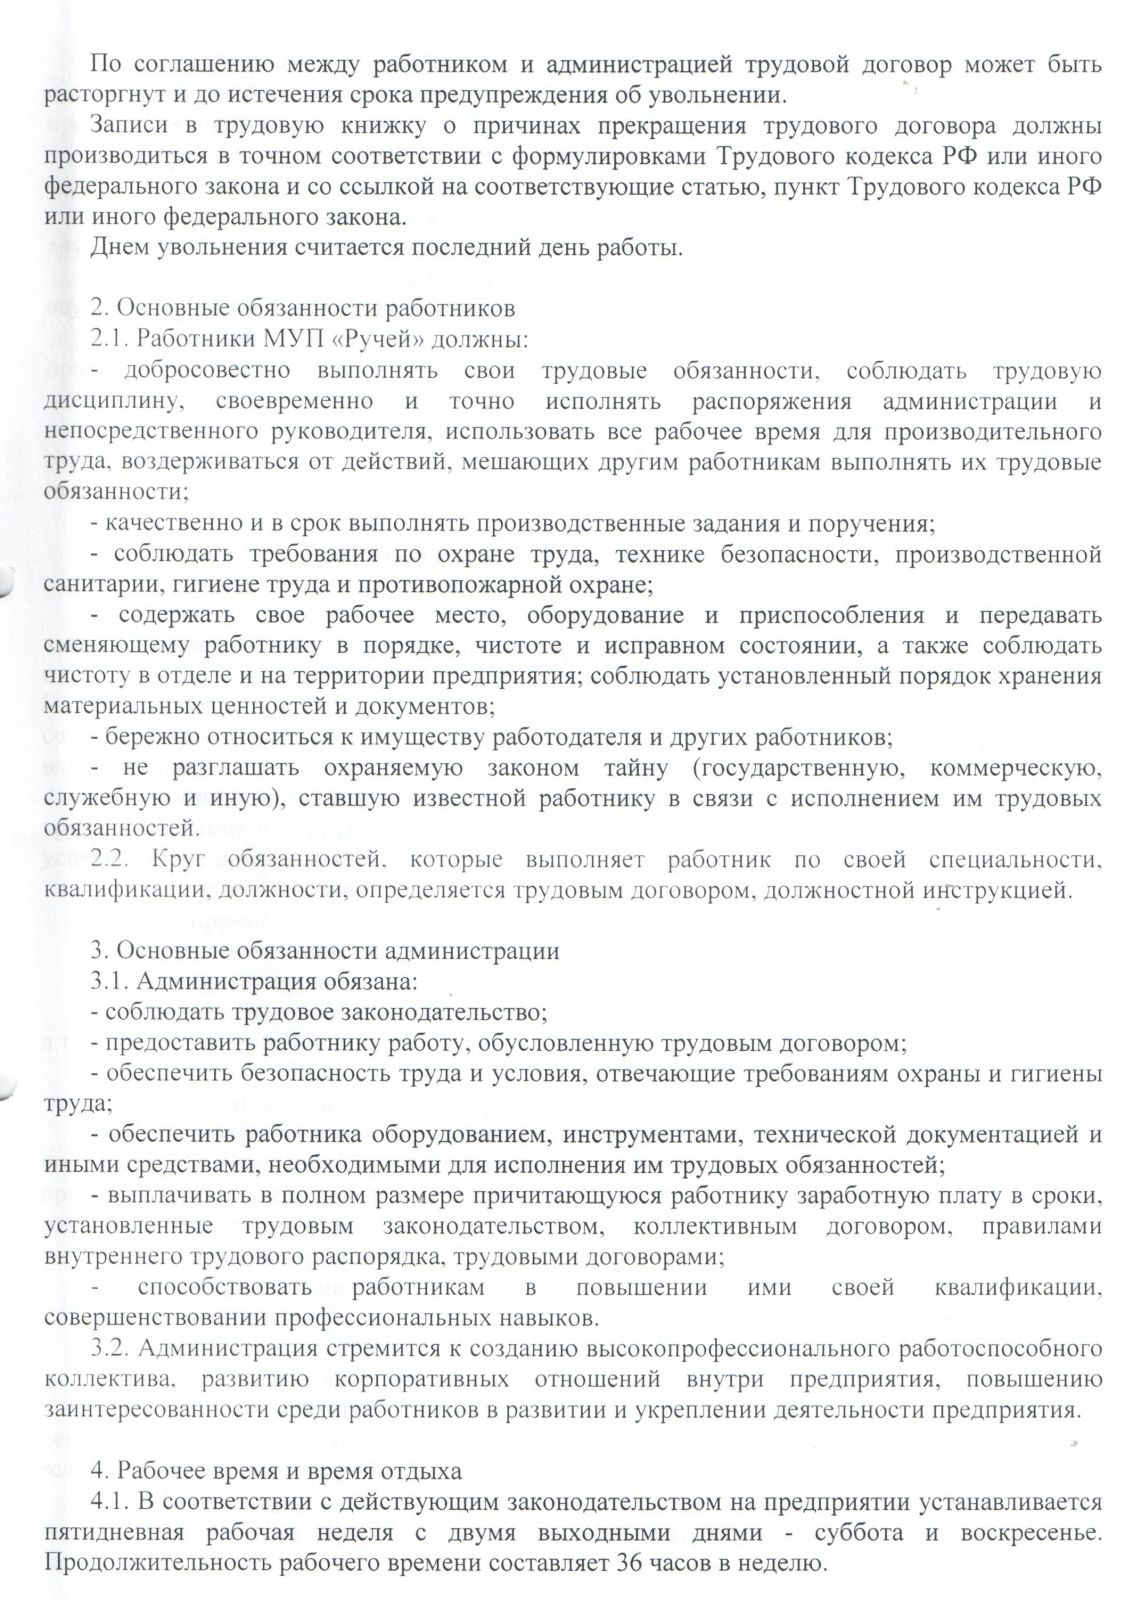 Правила внутреннего трудового распорядка для работников МУП "Ручей" от 11.01.2016